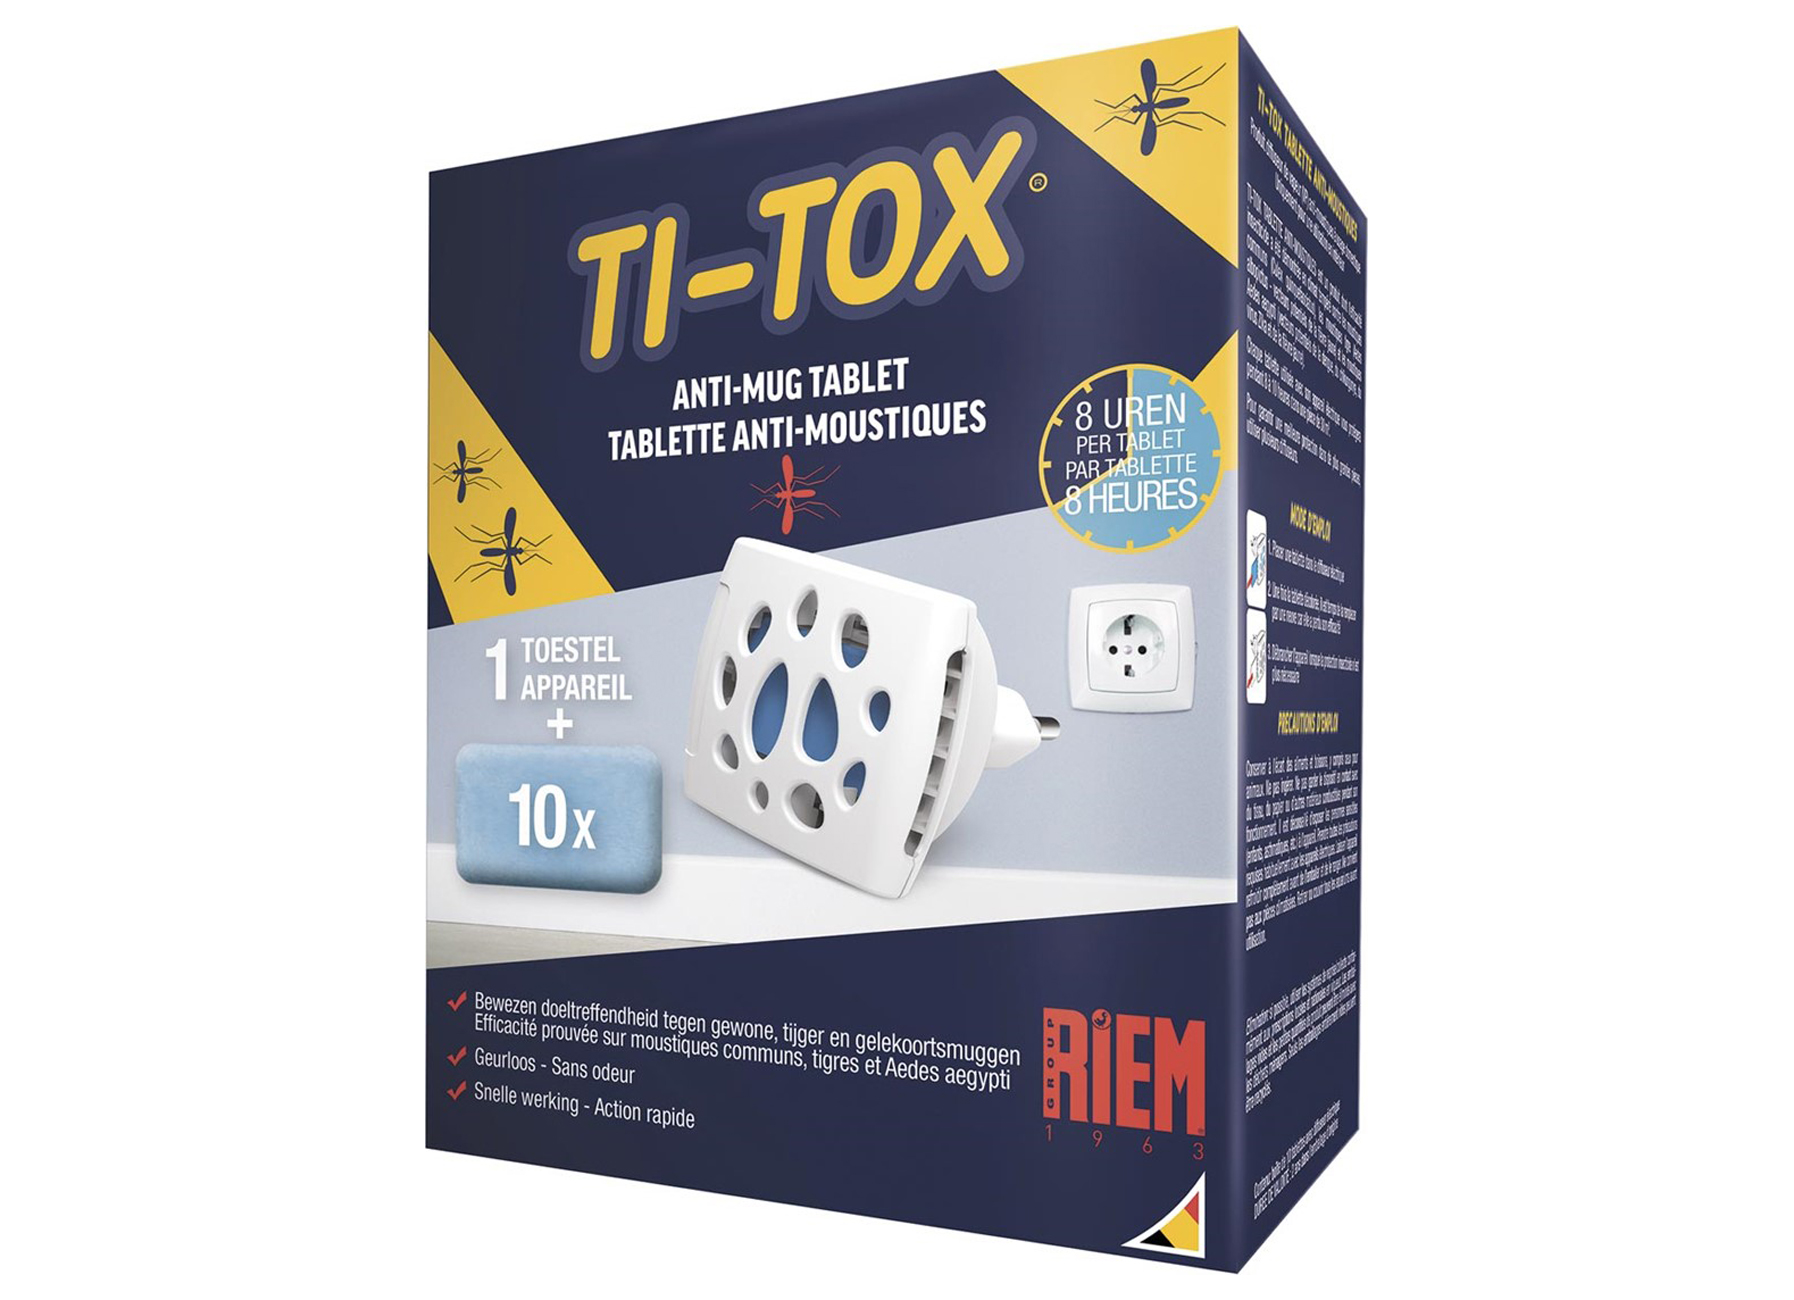 RIEM TI-TOX ANTI-MOUSTIQUE STARTER KIT 1 EVAPORATEUR ELECTRIQUE + 10 TABLETTES